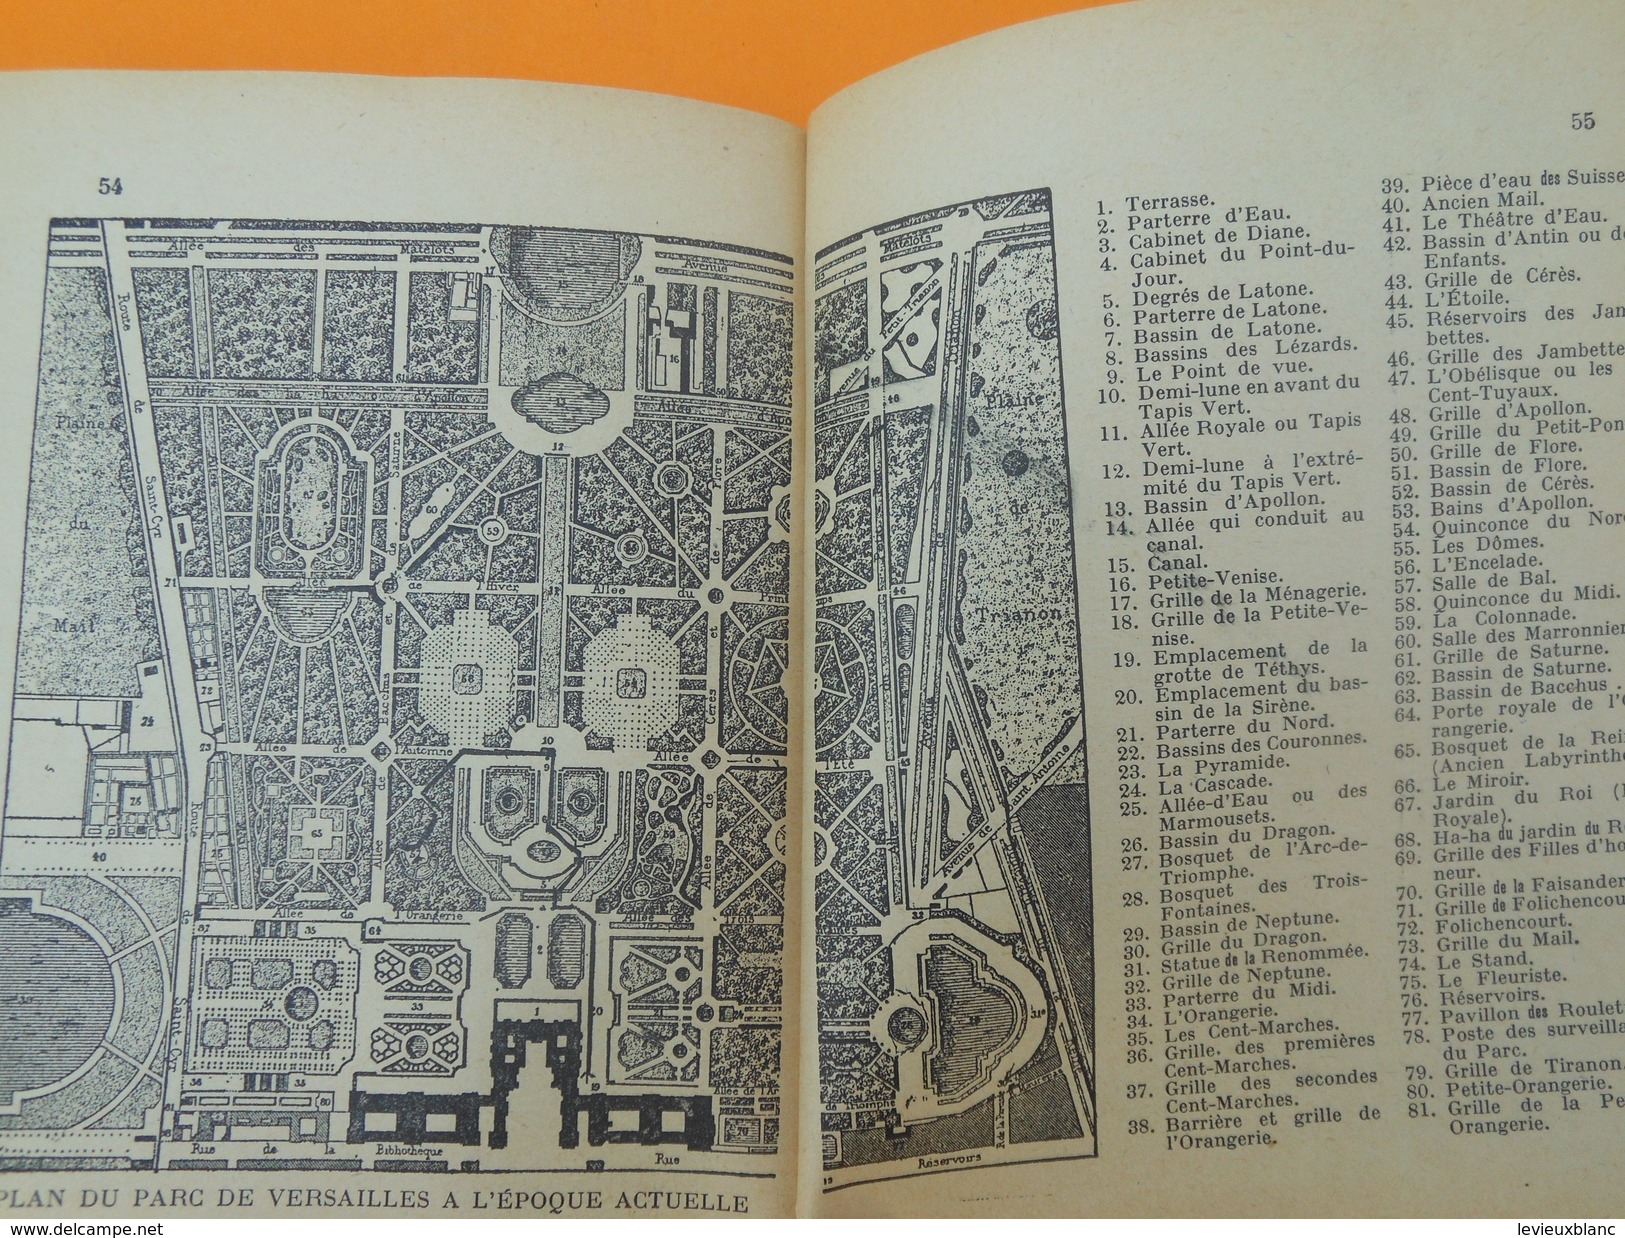 Guide Illustré / Une journée à VERSAILLES/Musée du Parc et chateau du Trianon/Braun & Cie/ 1946    PGC141